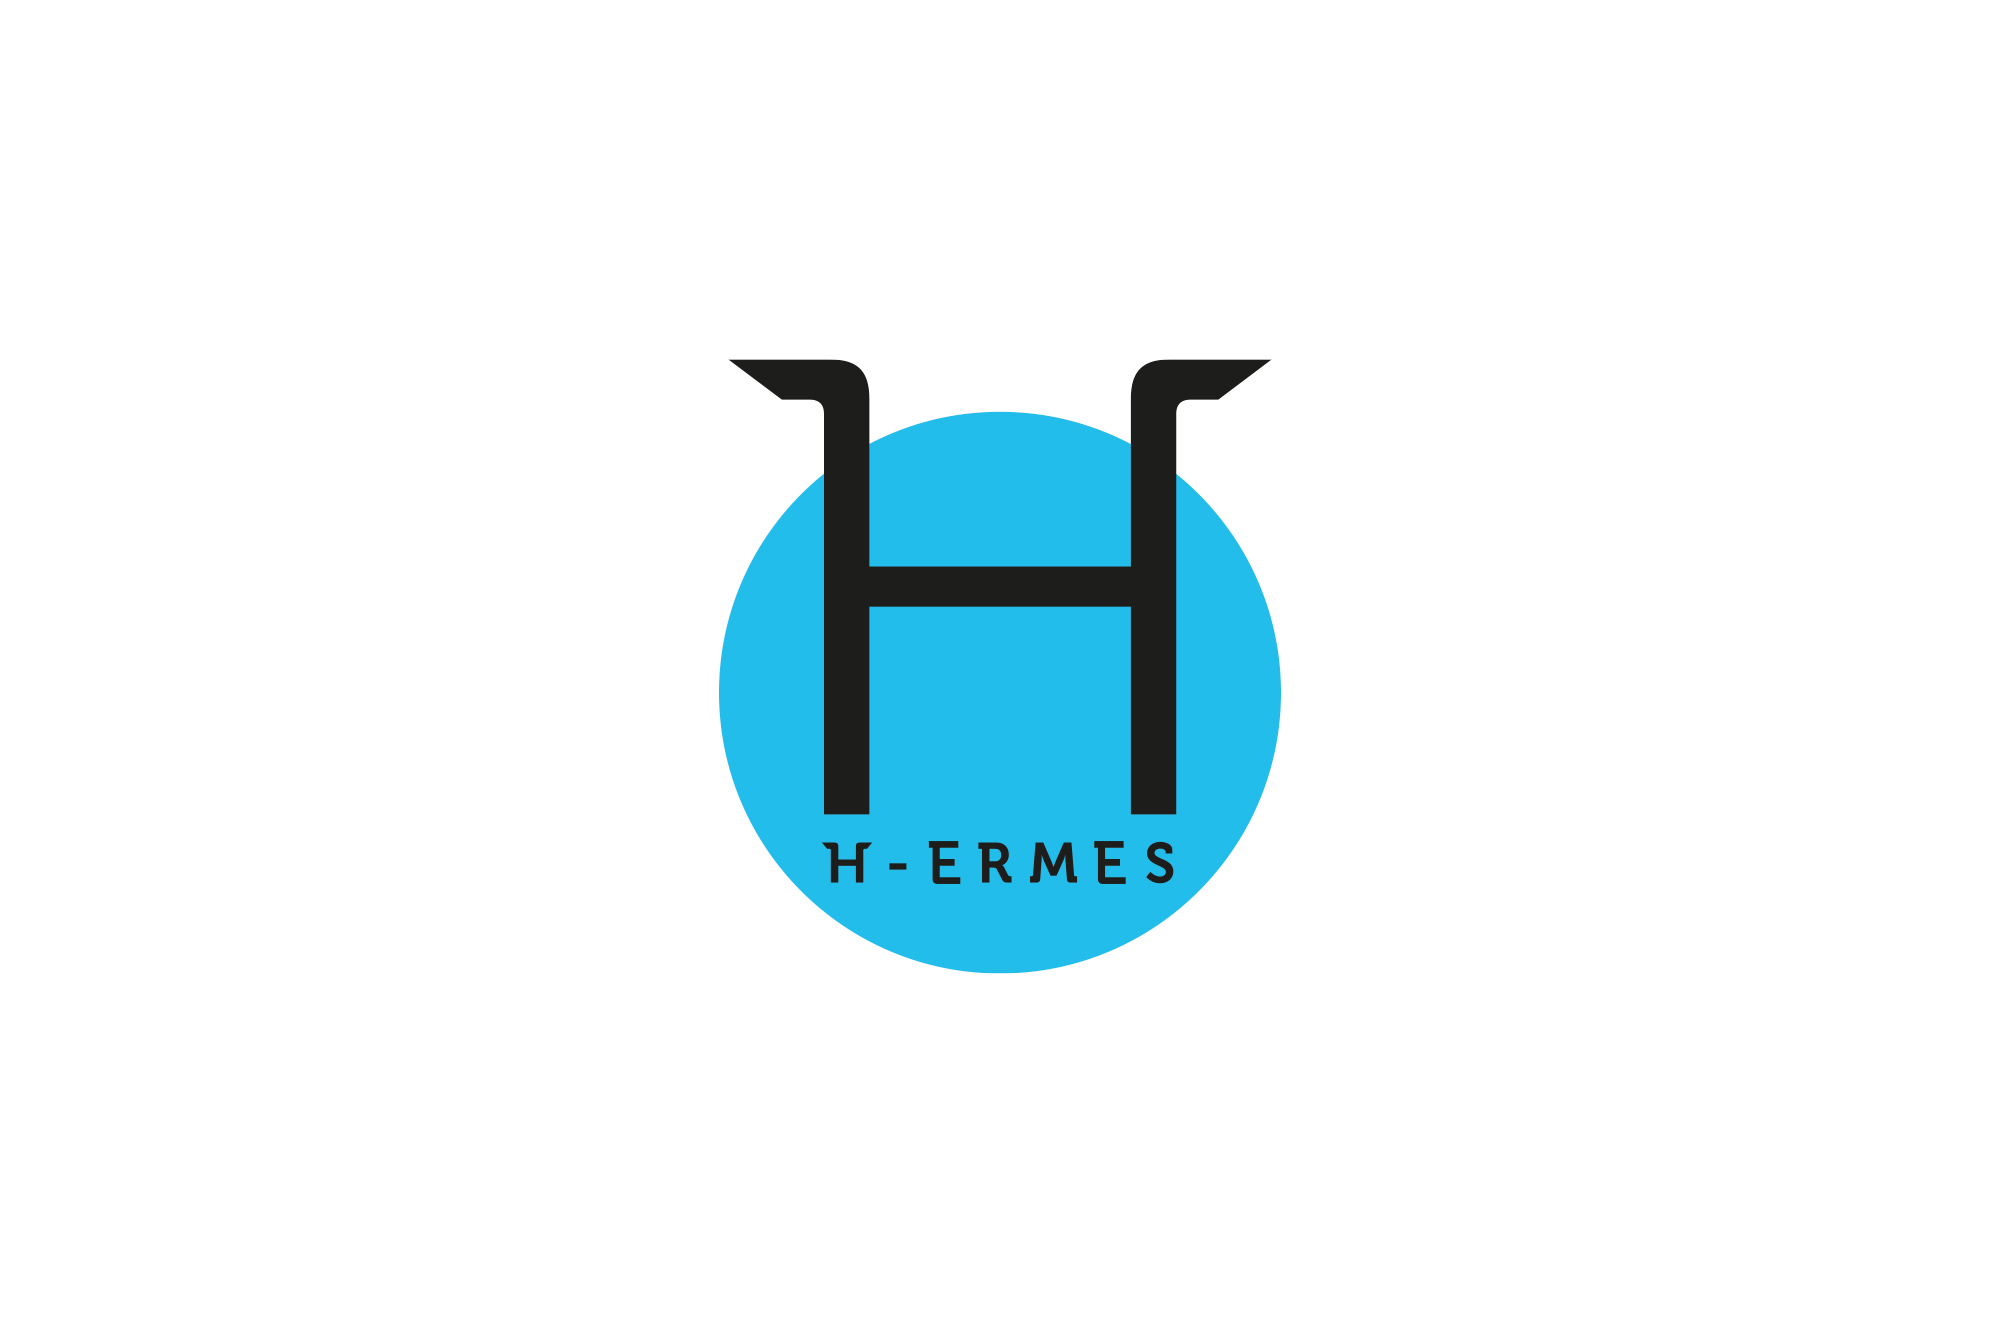 H-ermes – Logo, branding, journal cover - img 1